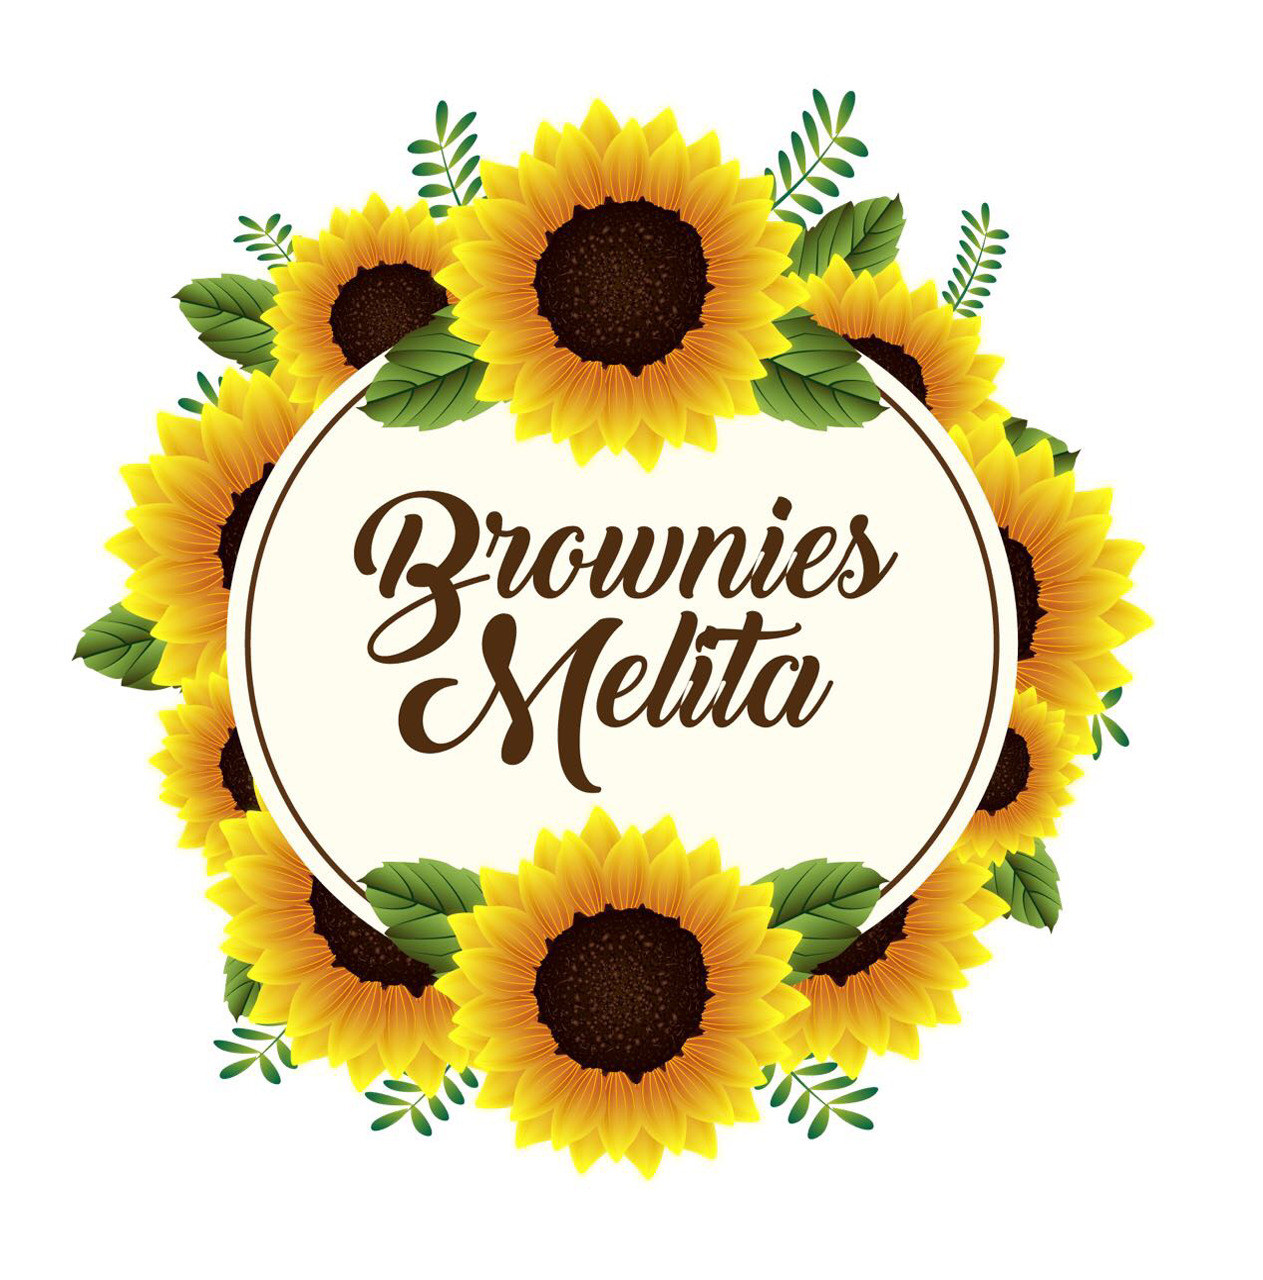 Brownies Melita